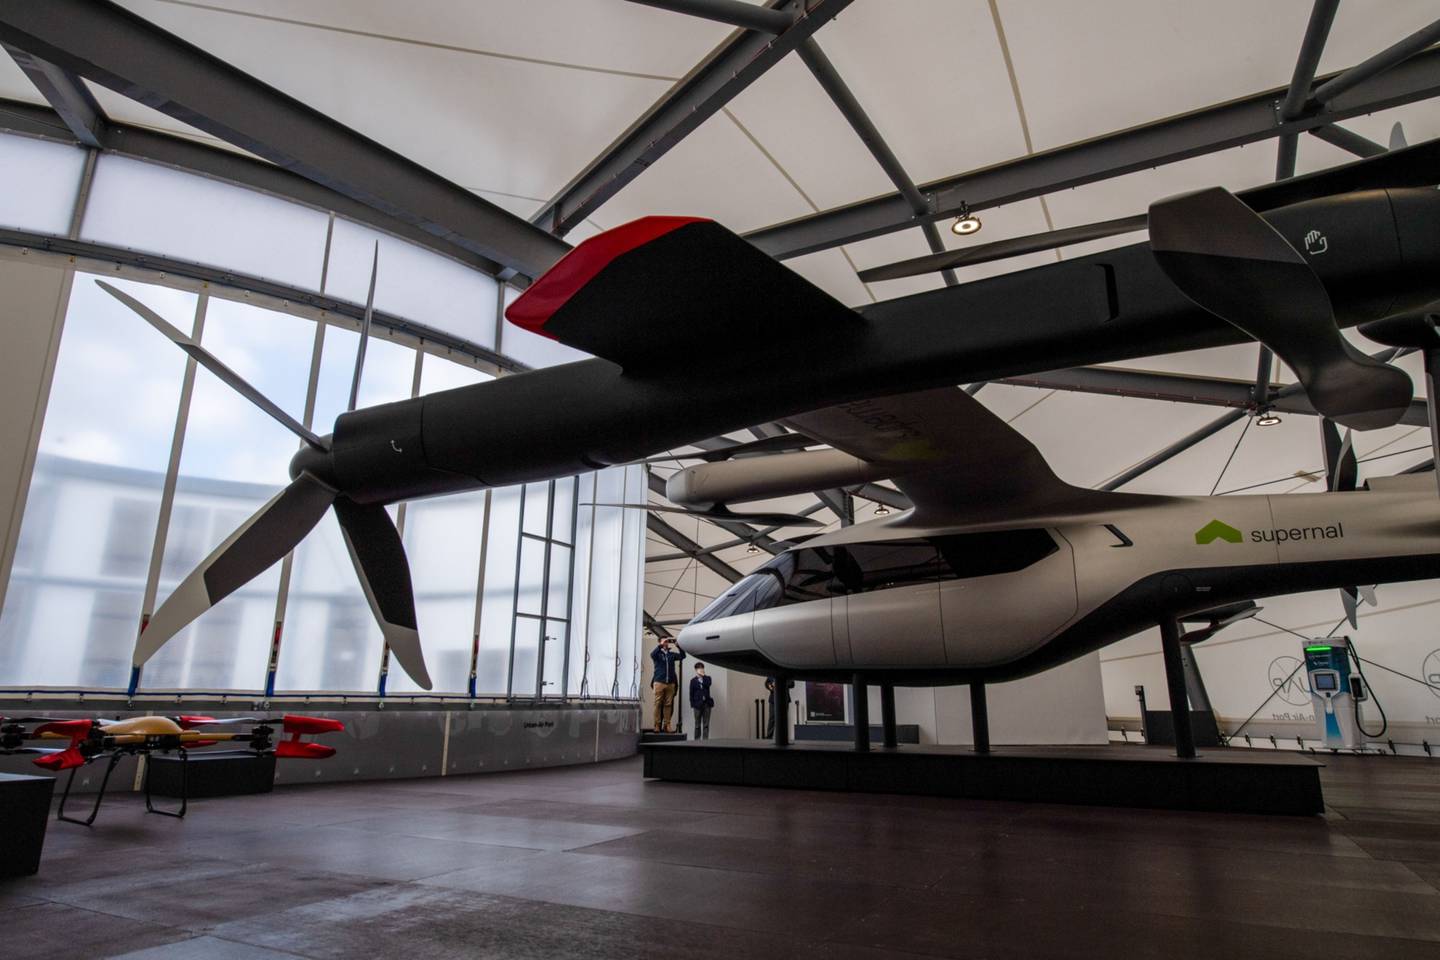 Una maqueta de un Vehículo Aéreo Eléctrico Supernal (eVtol) expuesta en el interior del vertiport, desarrollado por Urban-Air Port, para el despegue y aterrizaje vertical de taxis voladores y drones de reparto autónomos, en Coventry, Reino Unido.